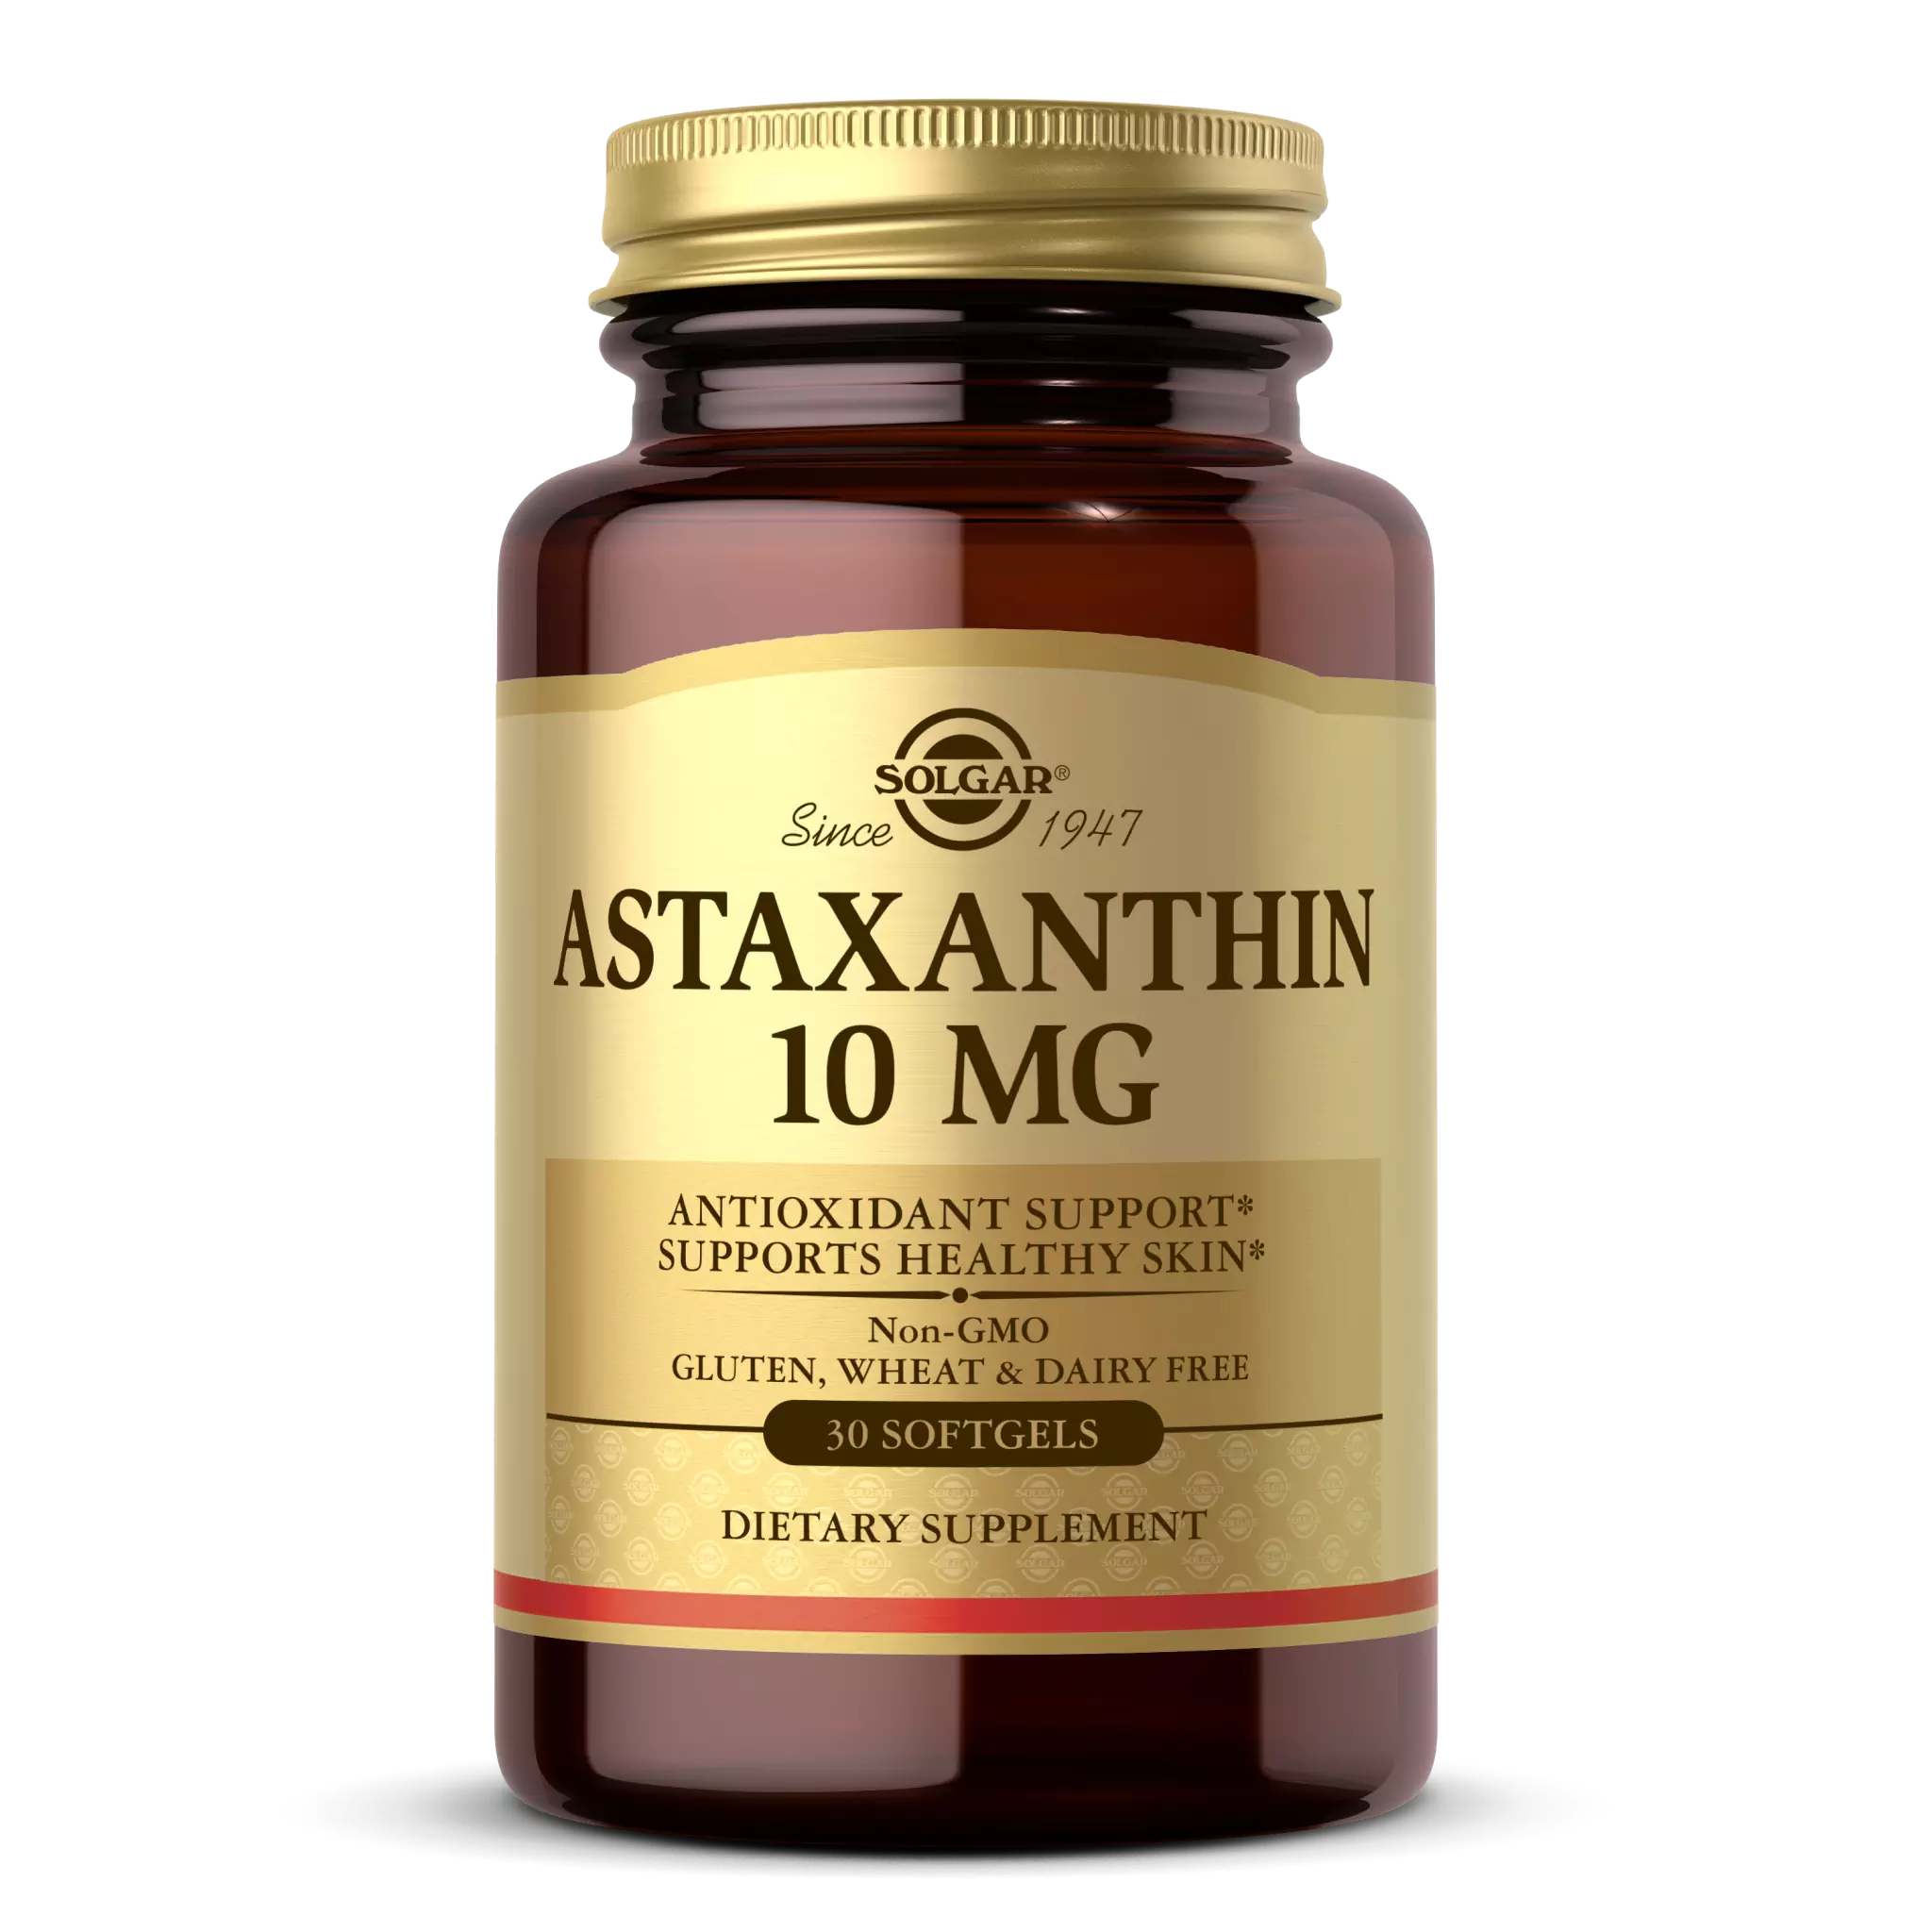 Solgar - Astaxanthin 10 mg softgel